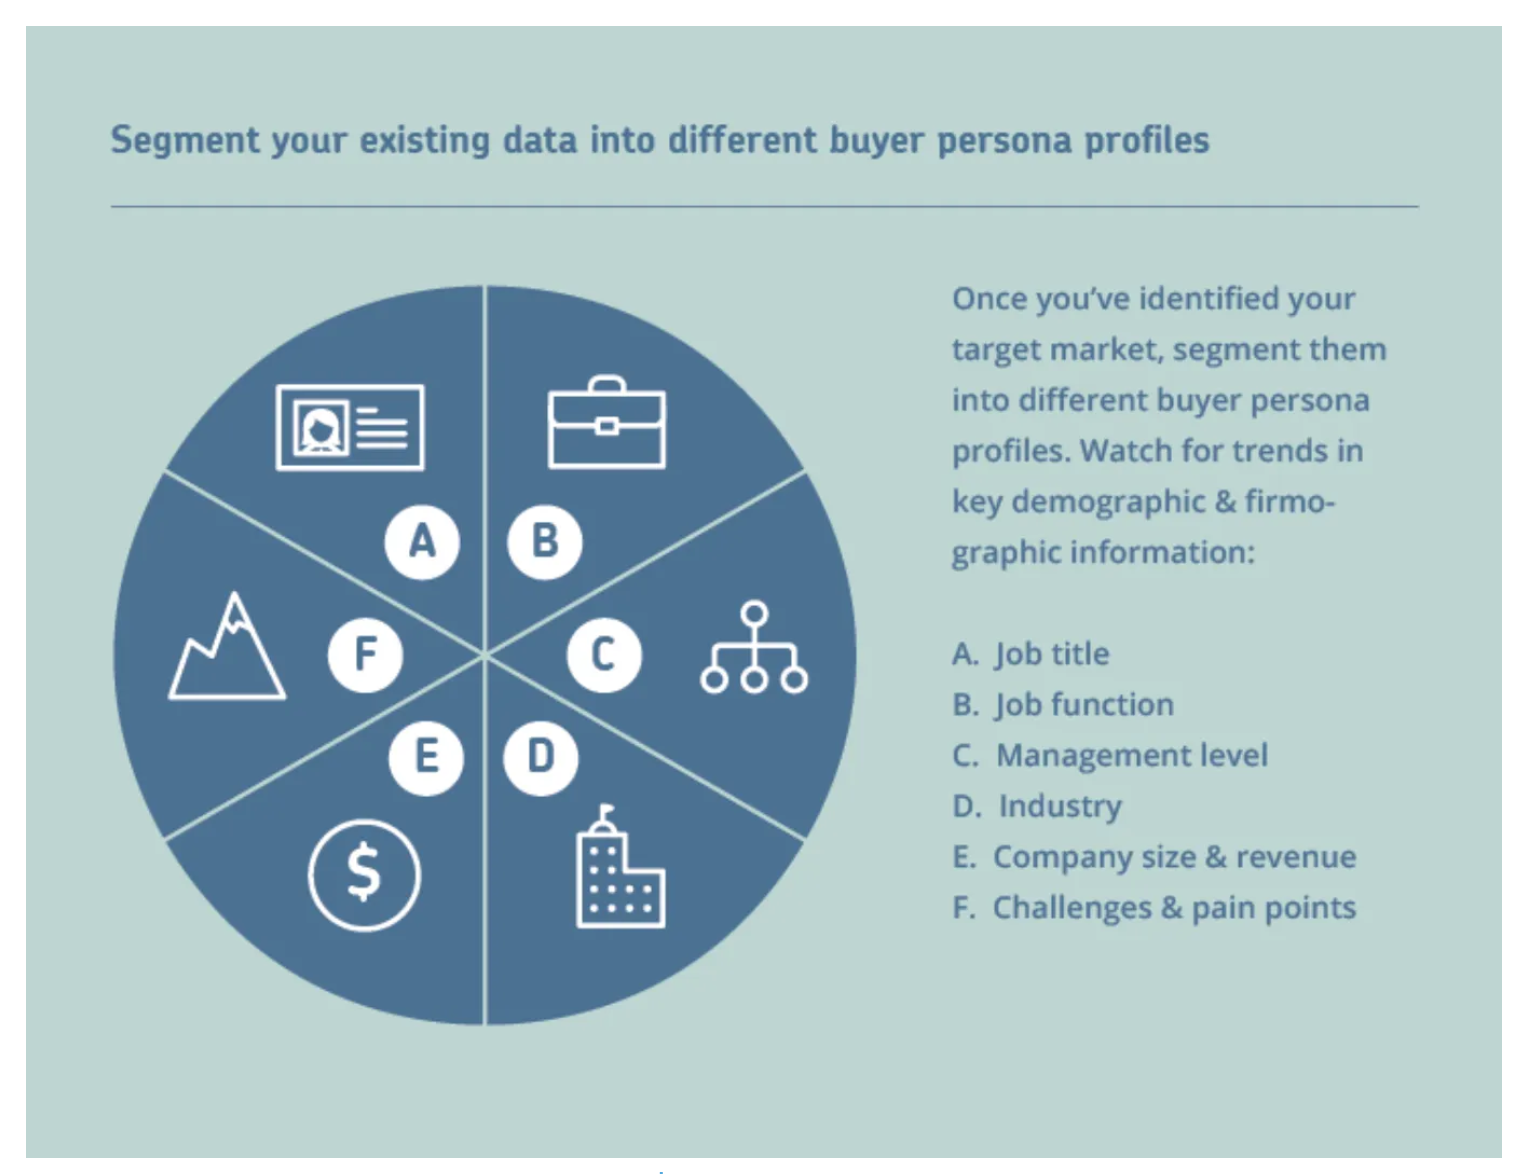 How to segment buyer persona profiles